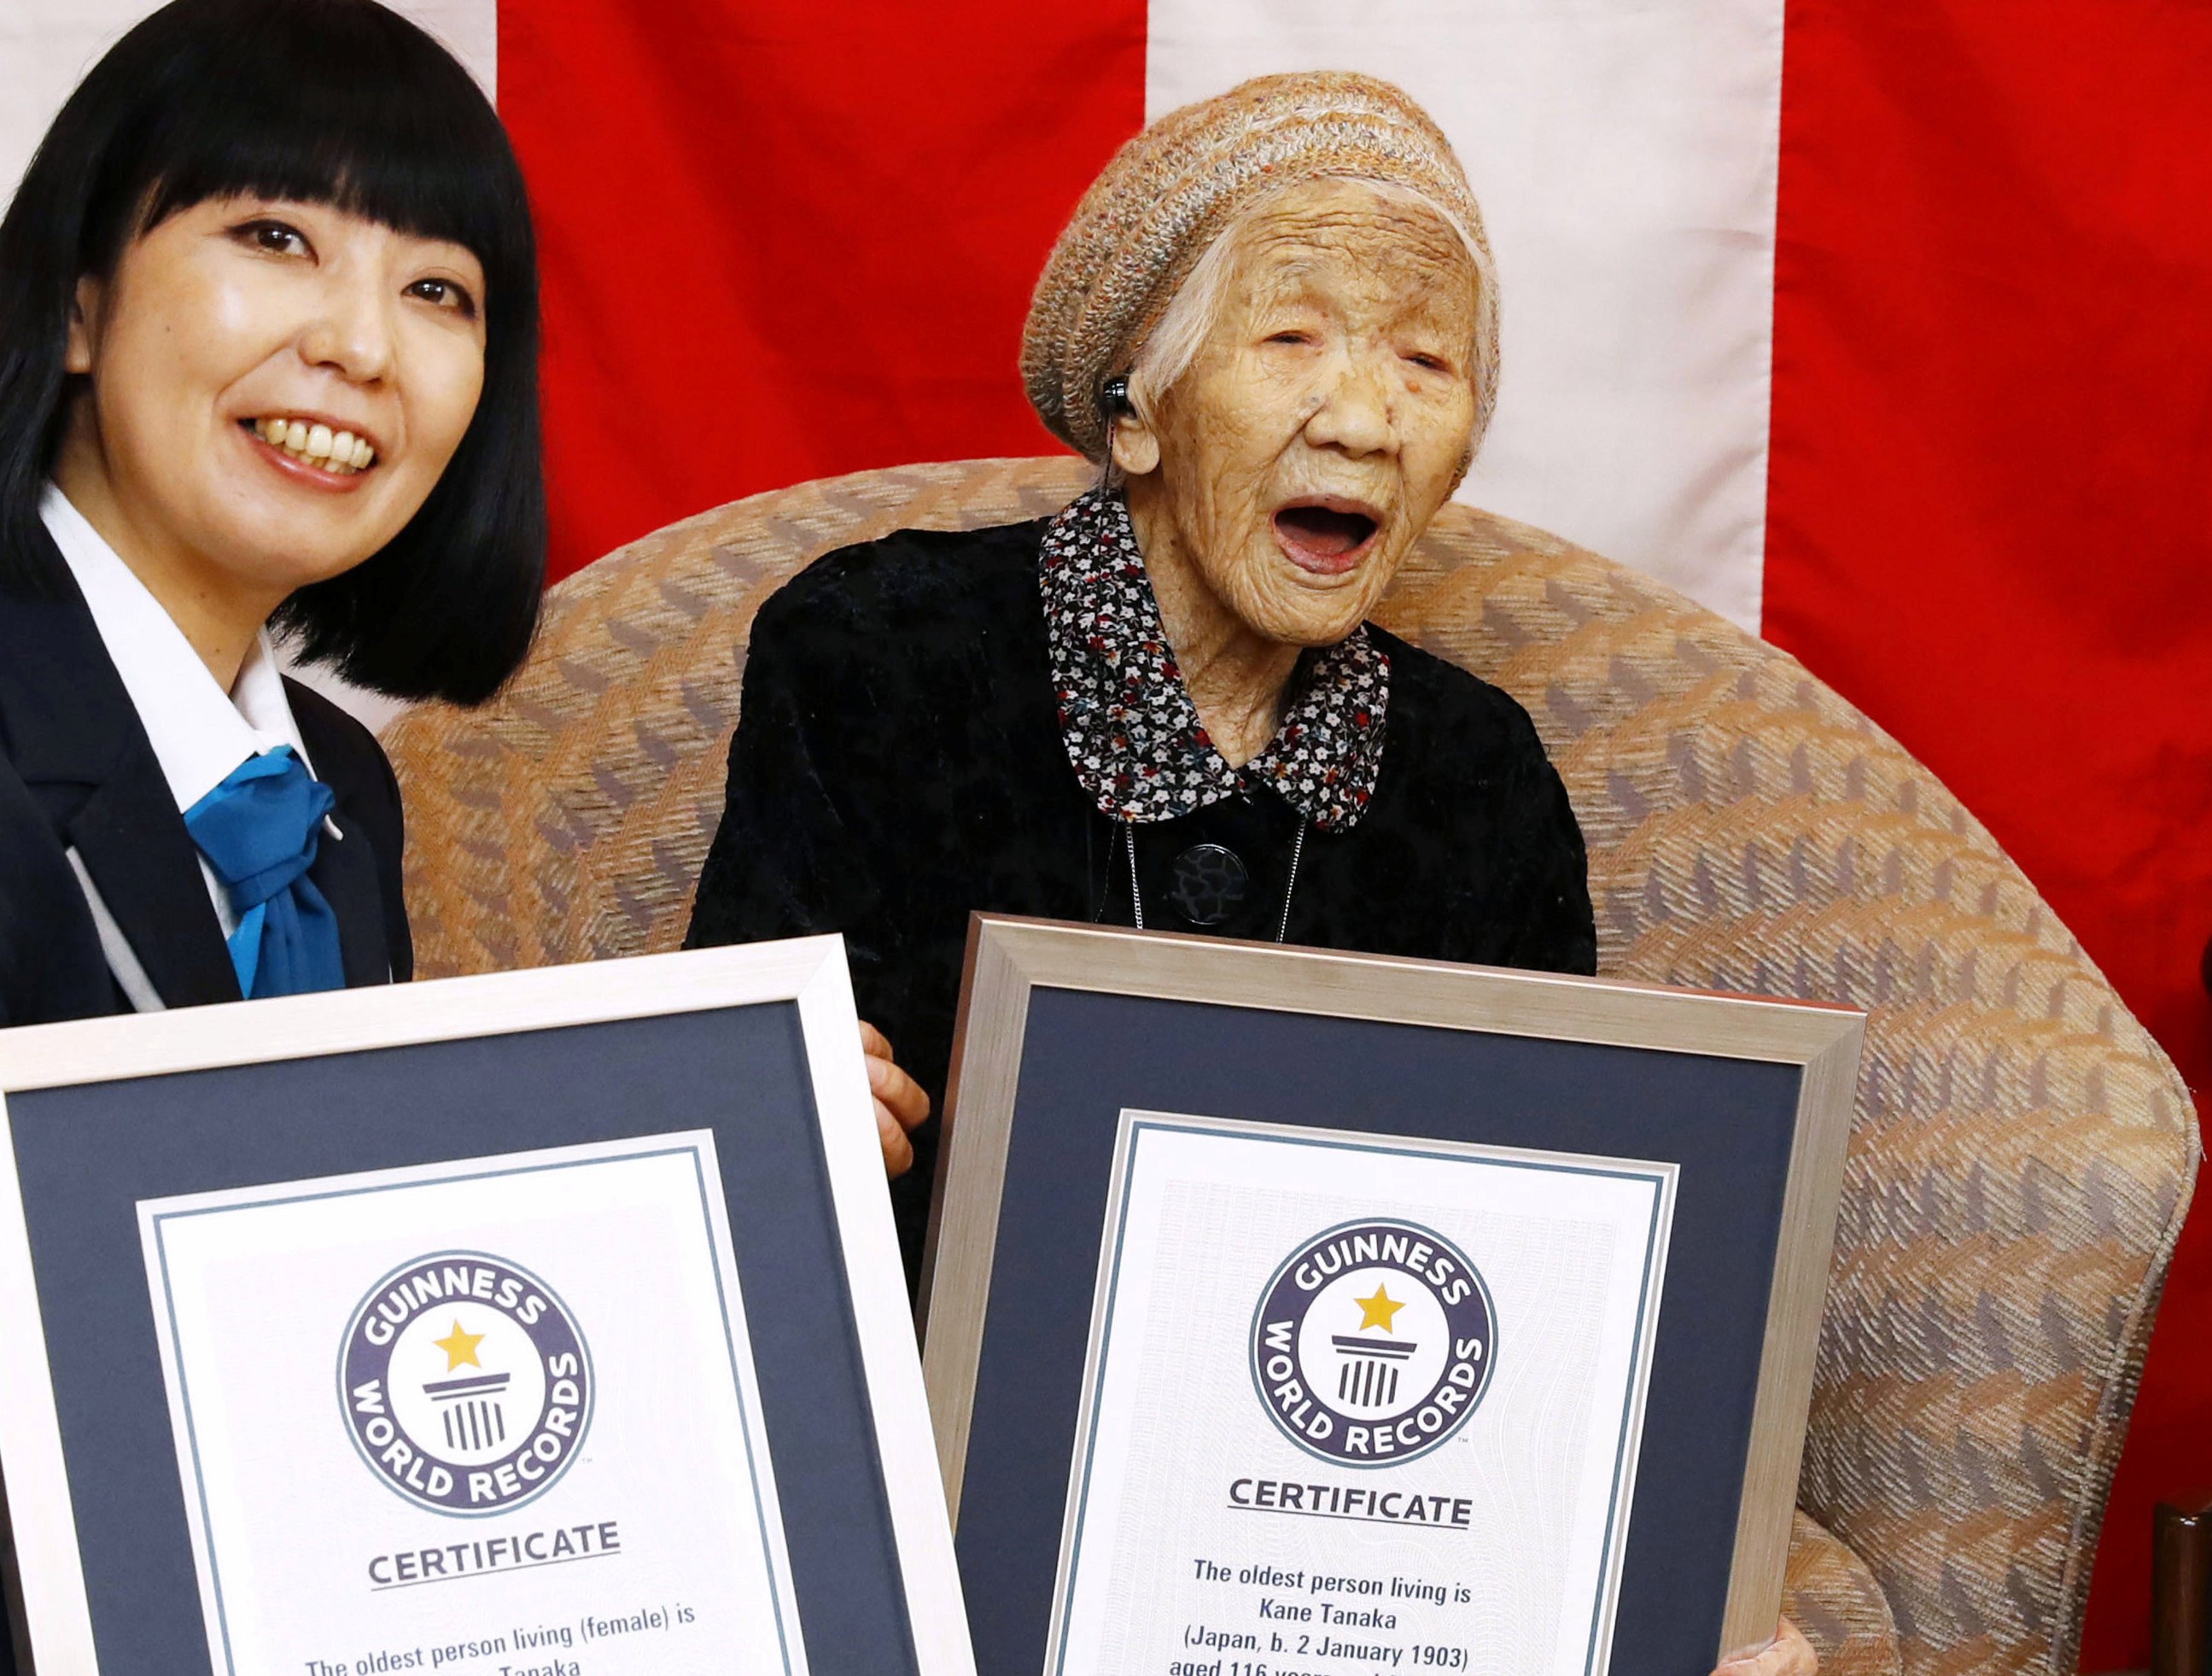 2019年3月9日，健力士世界纪录组织确认田中力子（右）以116岁零66天高龄成为“全球在世最长寿老人”。而今年118岁的她将成为奥运史上年纪最长的火炬手。（网络照）

